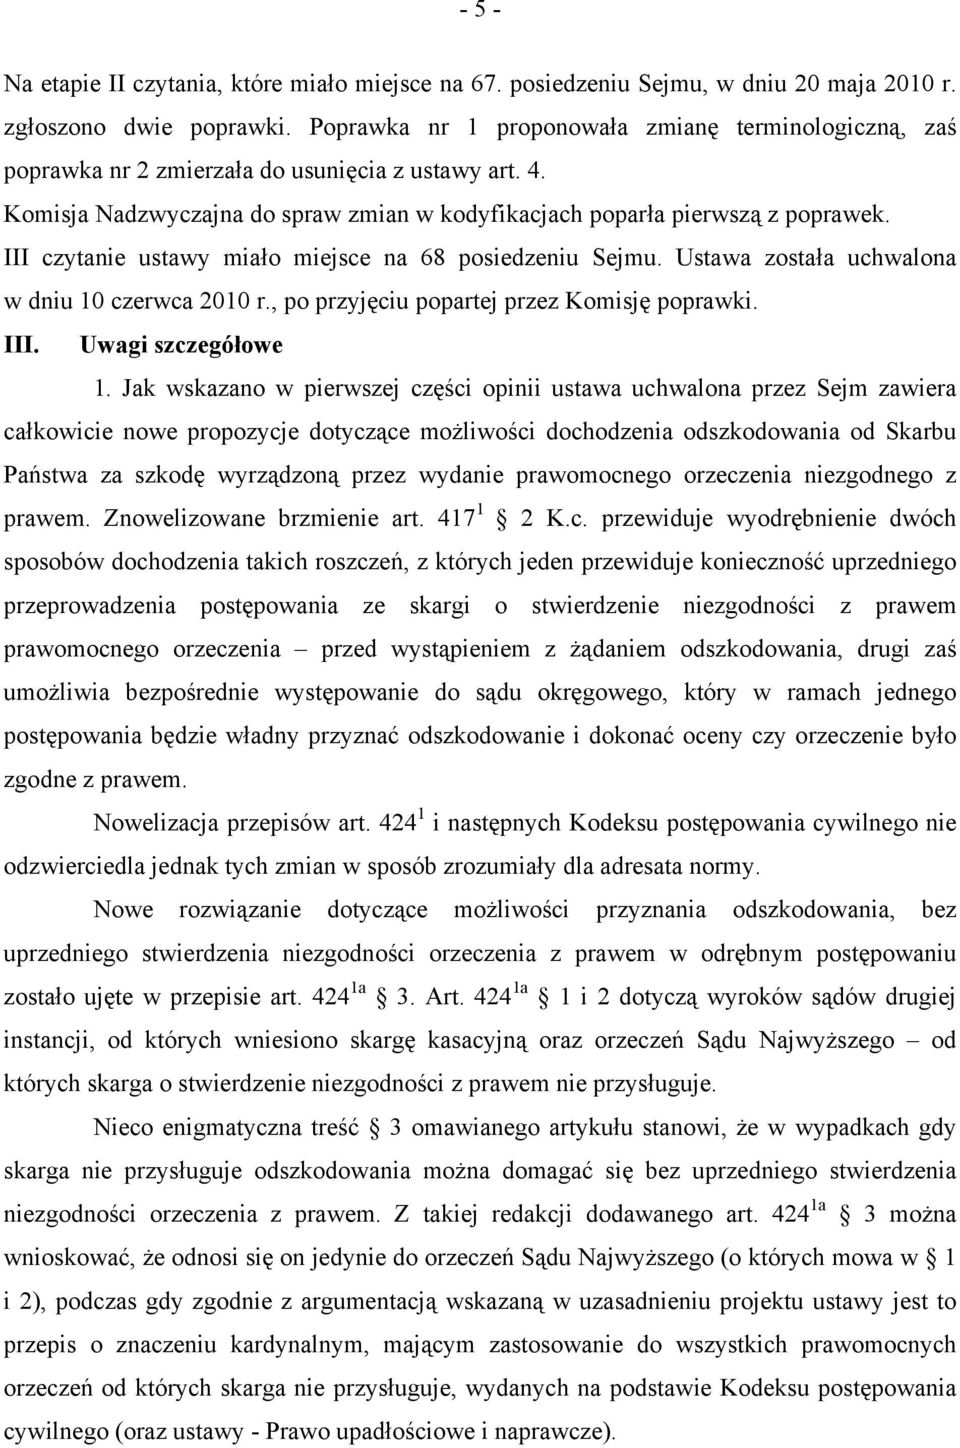 III czytanie ustawy miało miejsce na 68 posiedzeniu Sejmu. Ustawa została uchwalona w dniu 10 czerwca 2010 r., po przyjęciu popartej przez Komisję poprawki. III. Uwagi szczegółowe 1.